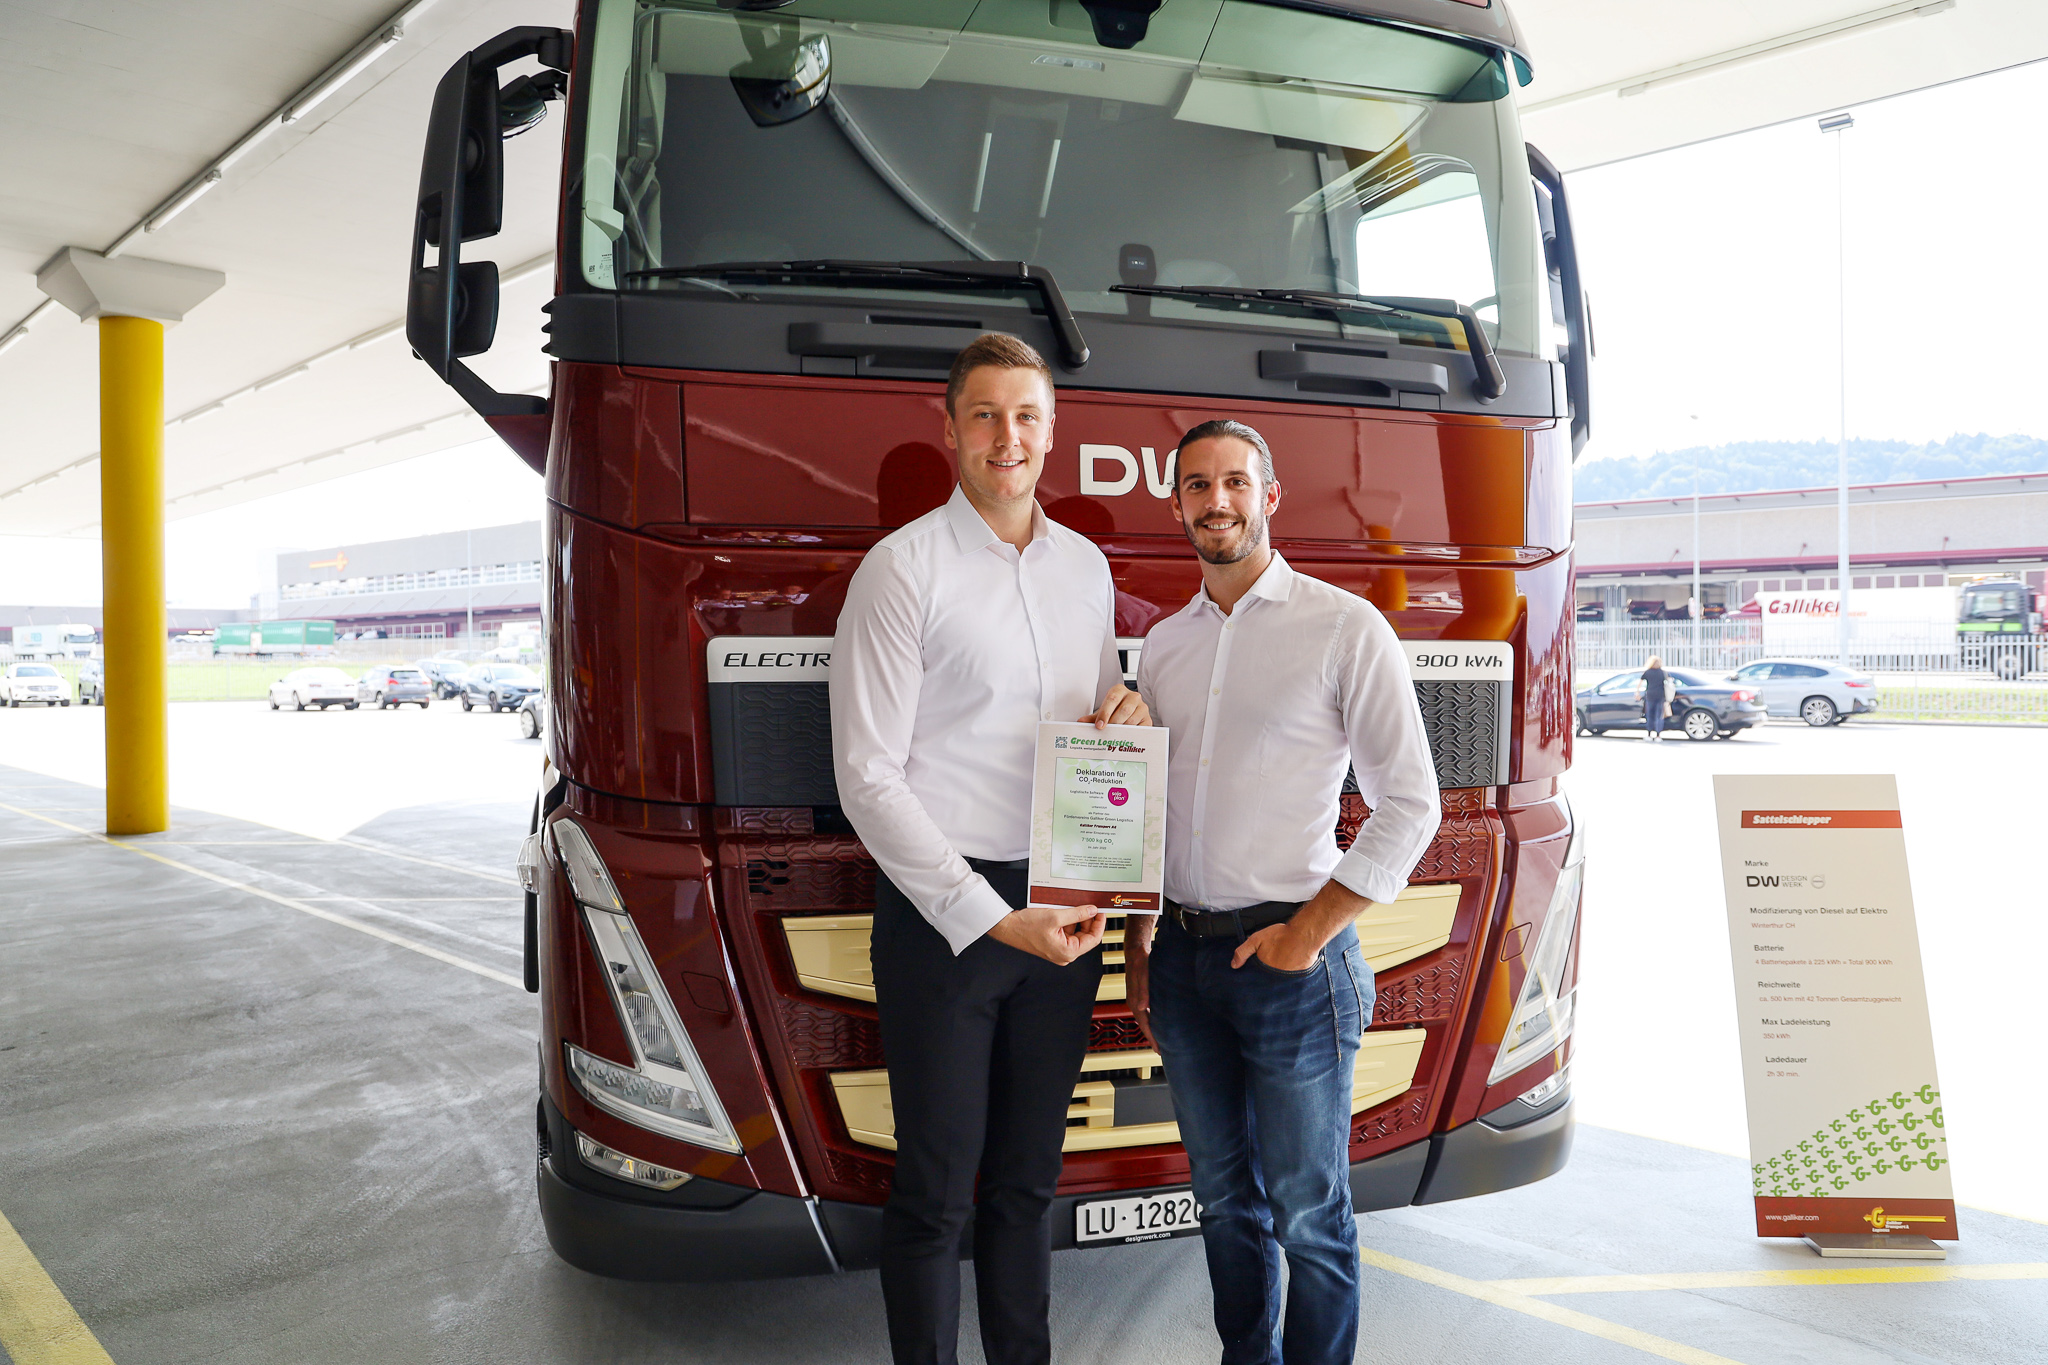 Soloplan promociona “Green Logistics” (la logística verde) – somos un socio orgulloso de nuestro cliente Galliker Transport AG